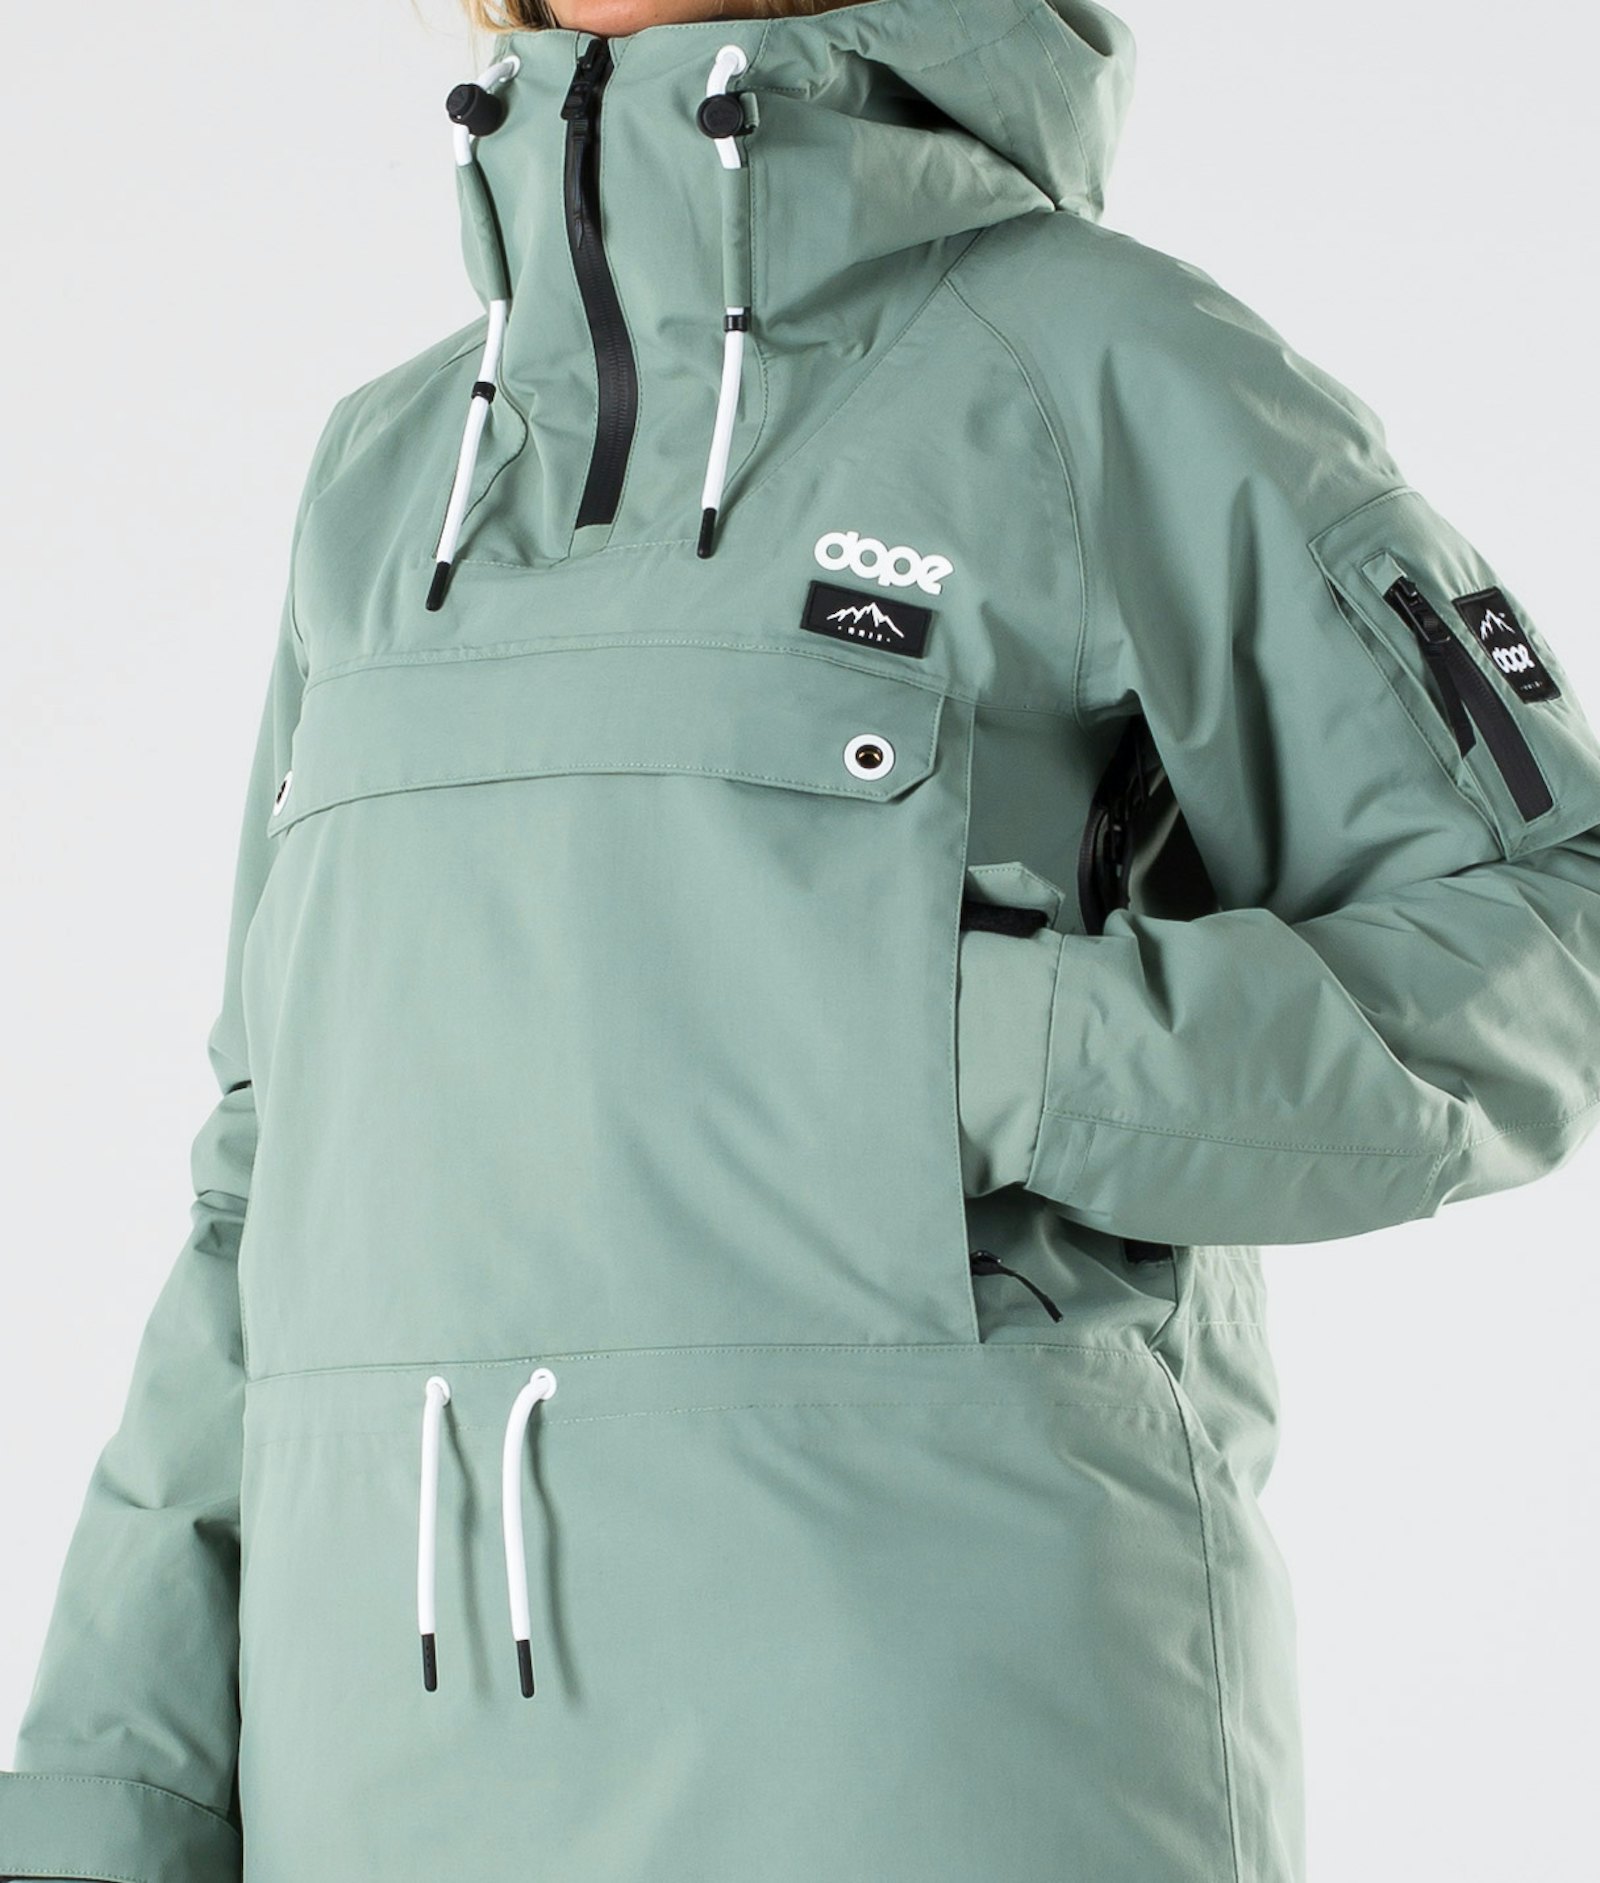 Annok W 2019 Snowboardjacke Damen Faded Green